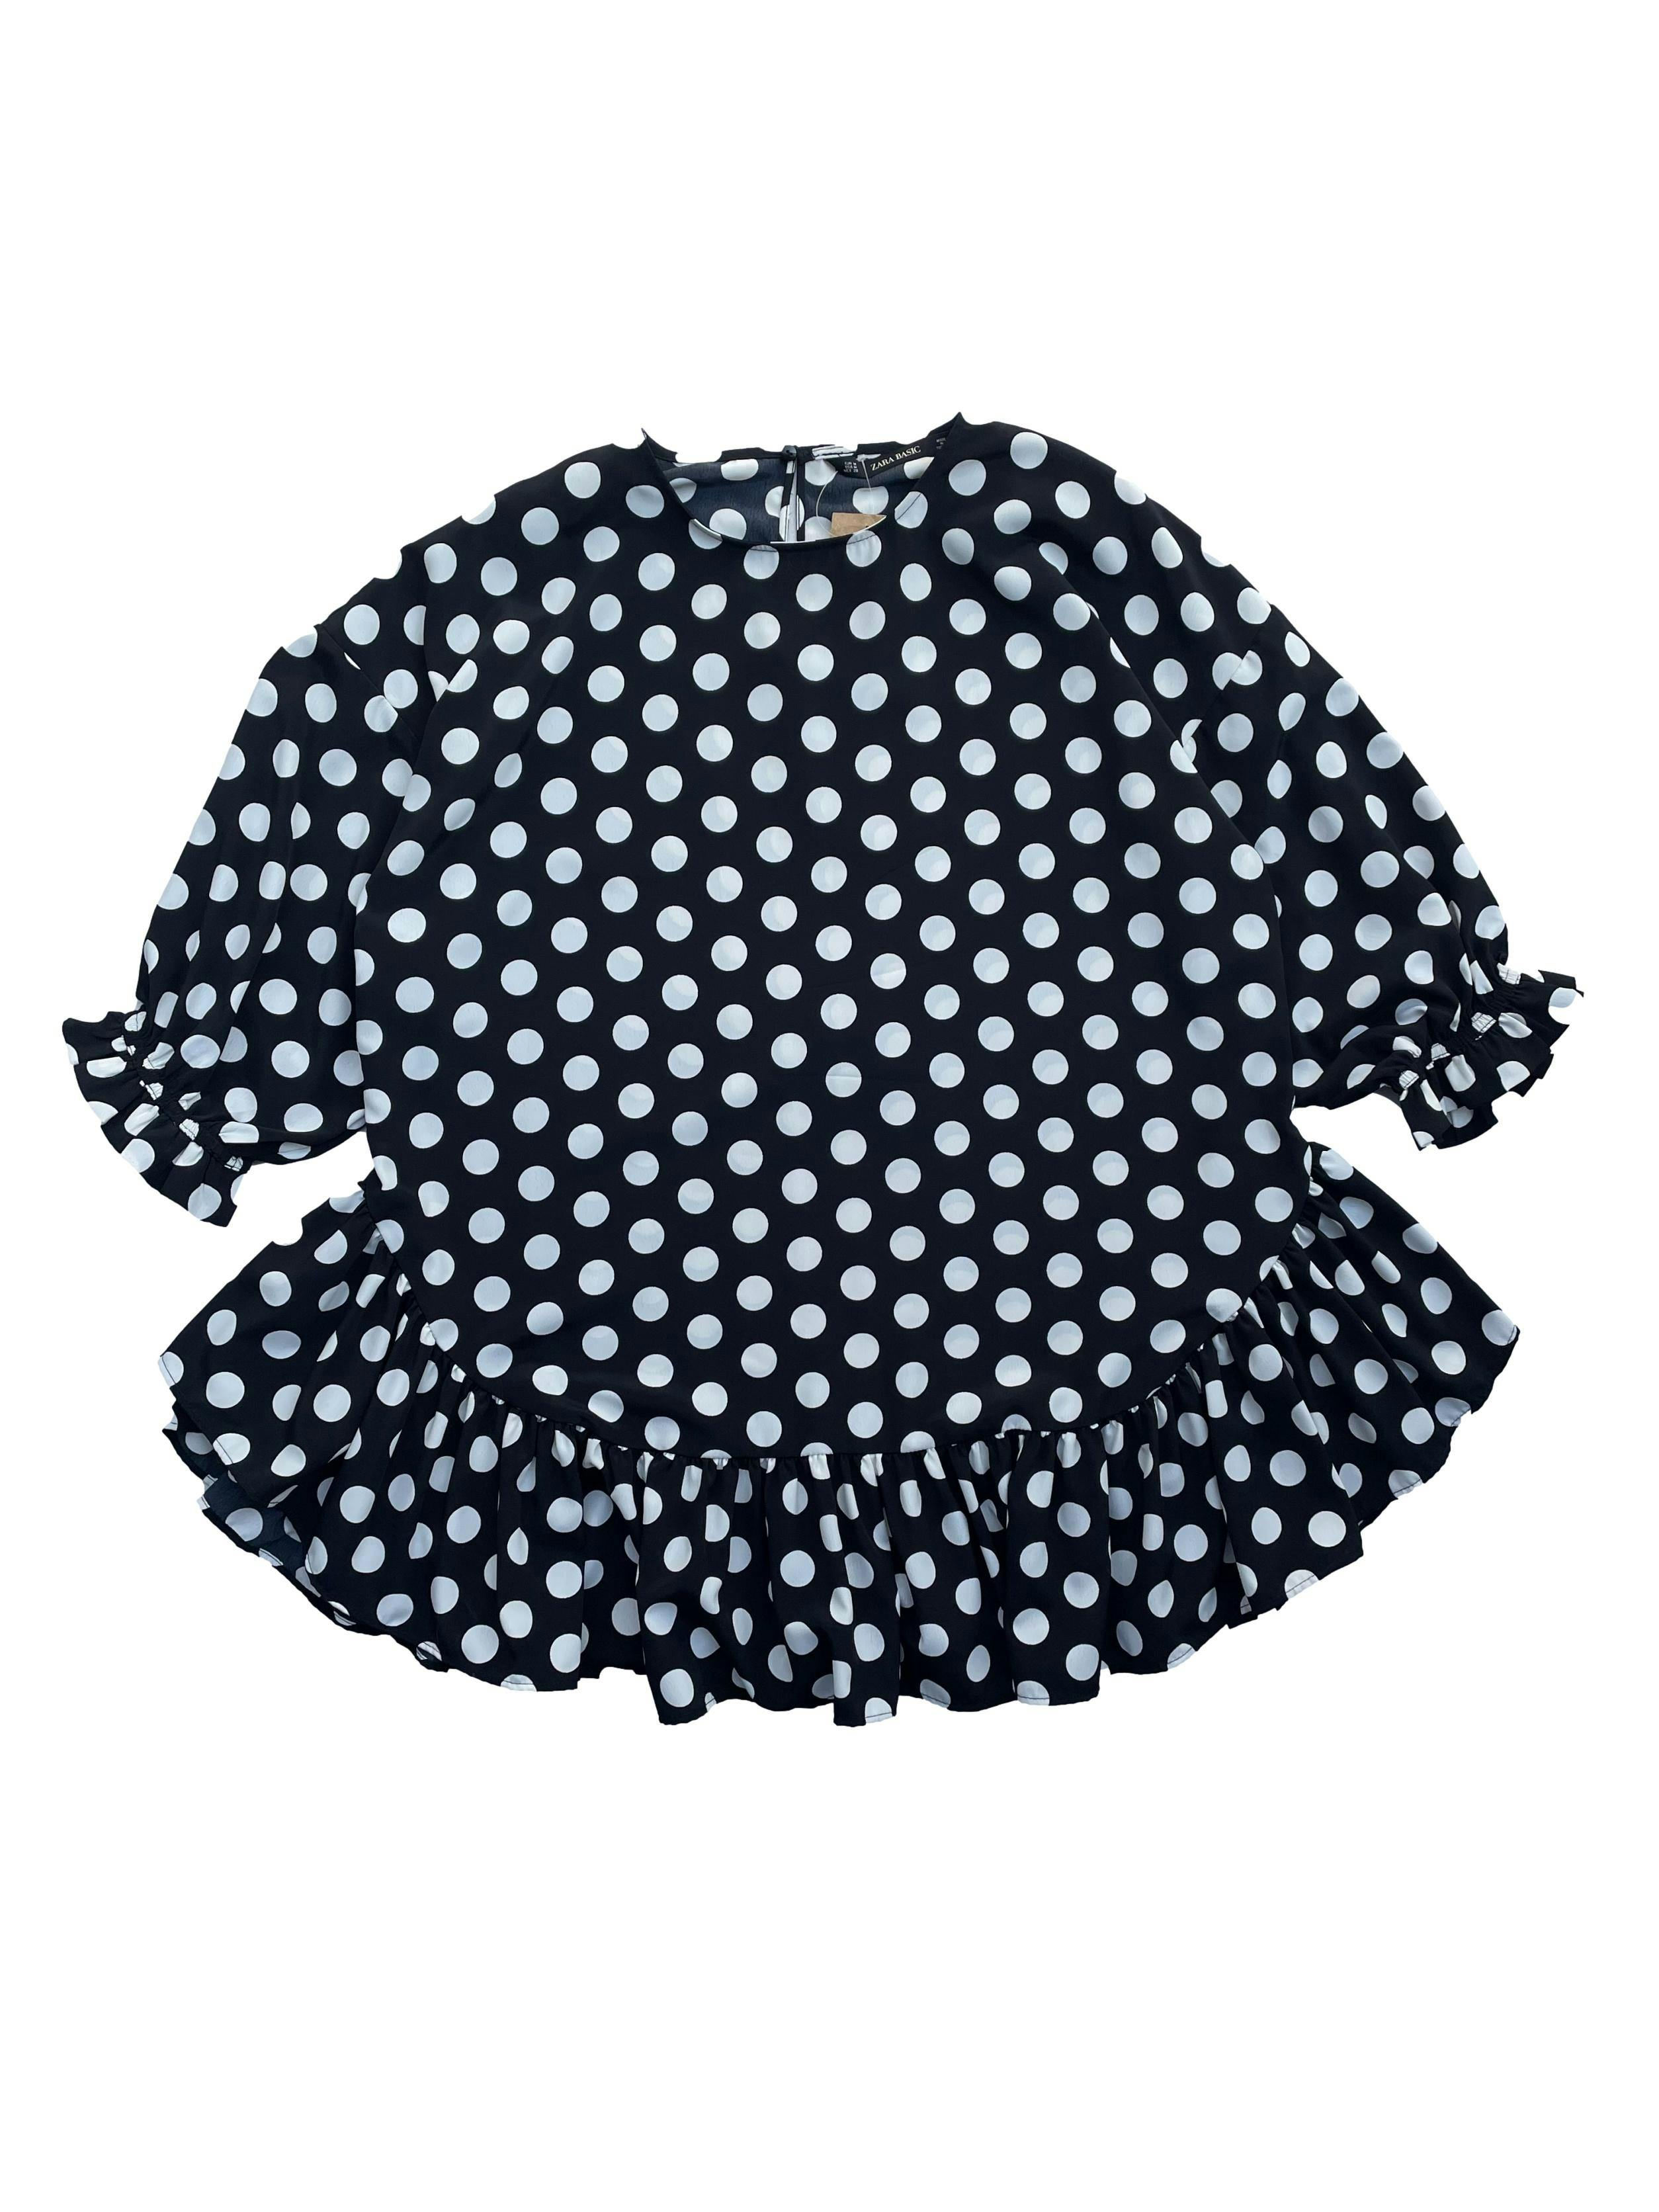 Blusón Zara negro con polka dots blancos , mangas 3/4 con elástico, volantes en basta y abertura con botón en la espalda. Busto 116cm, Largo 65cm.